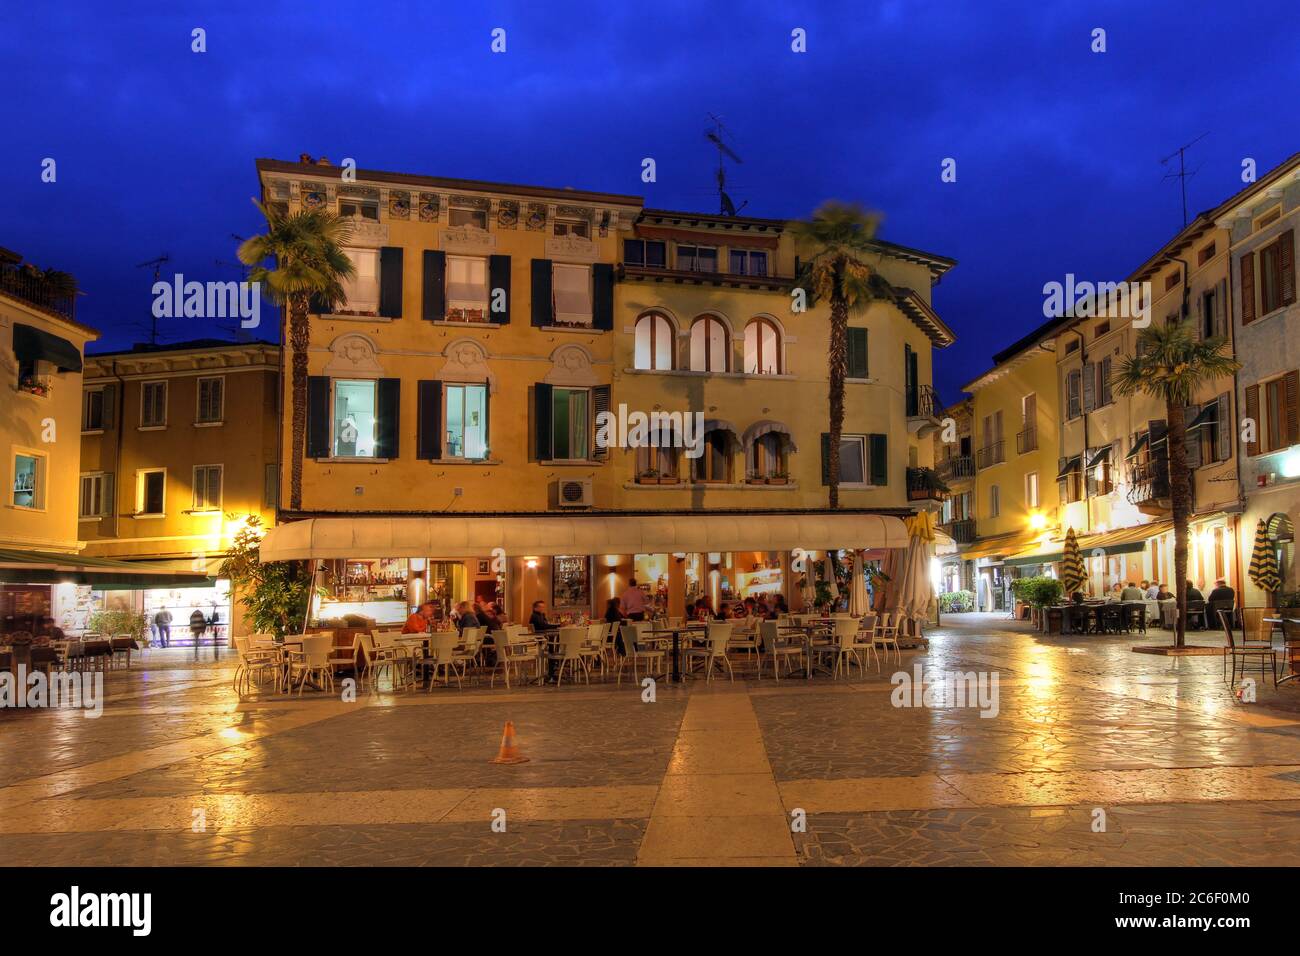 Nachtszene in der Altstadt von Sirmione, Italien, genauer gesagt die lebhafte Atmosphäre des Carducci Platzes mit seinen vielen Restaurants. Sirmione ist ein CO Stockfoto